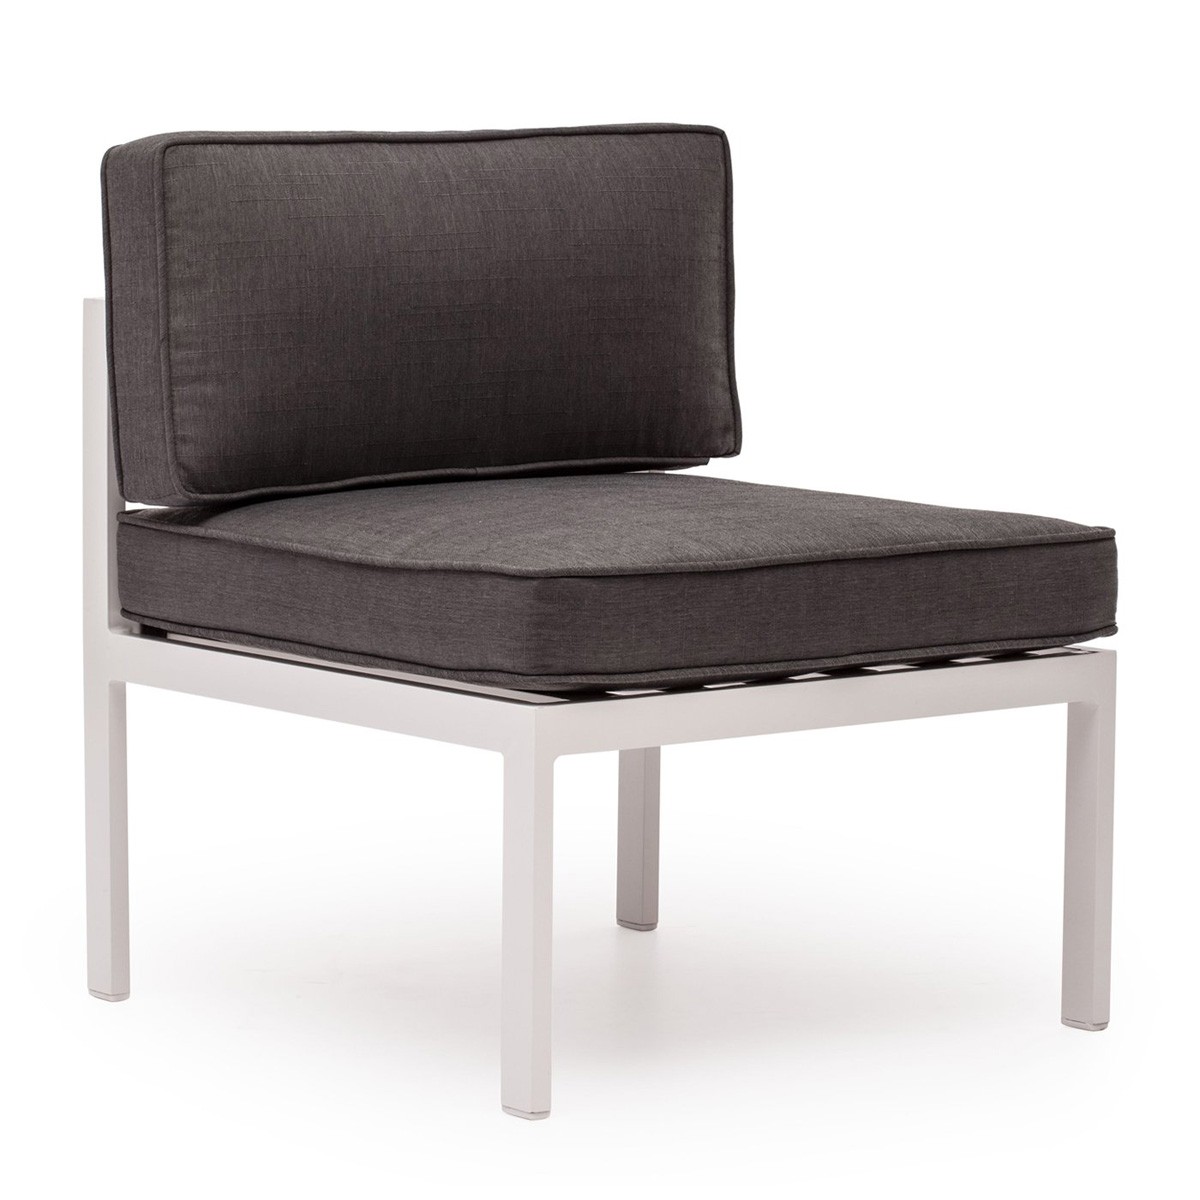 Zuo Modern Golden Beach Middle Chair - Gray